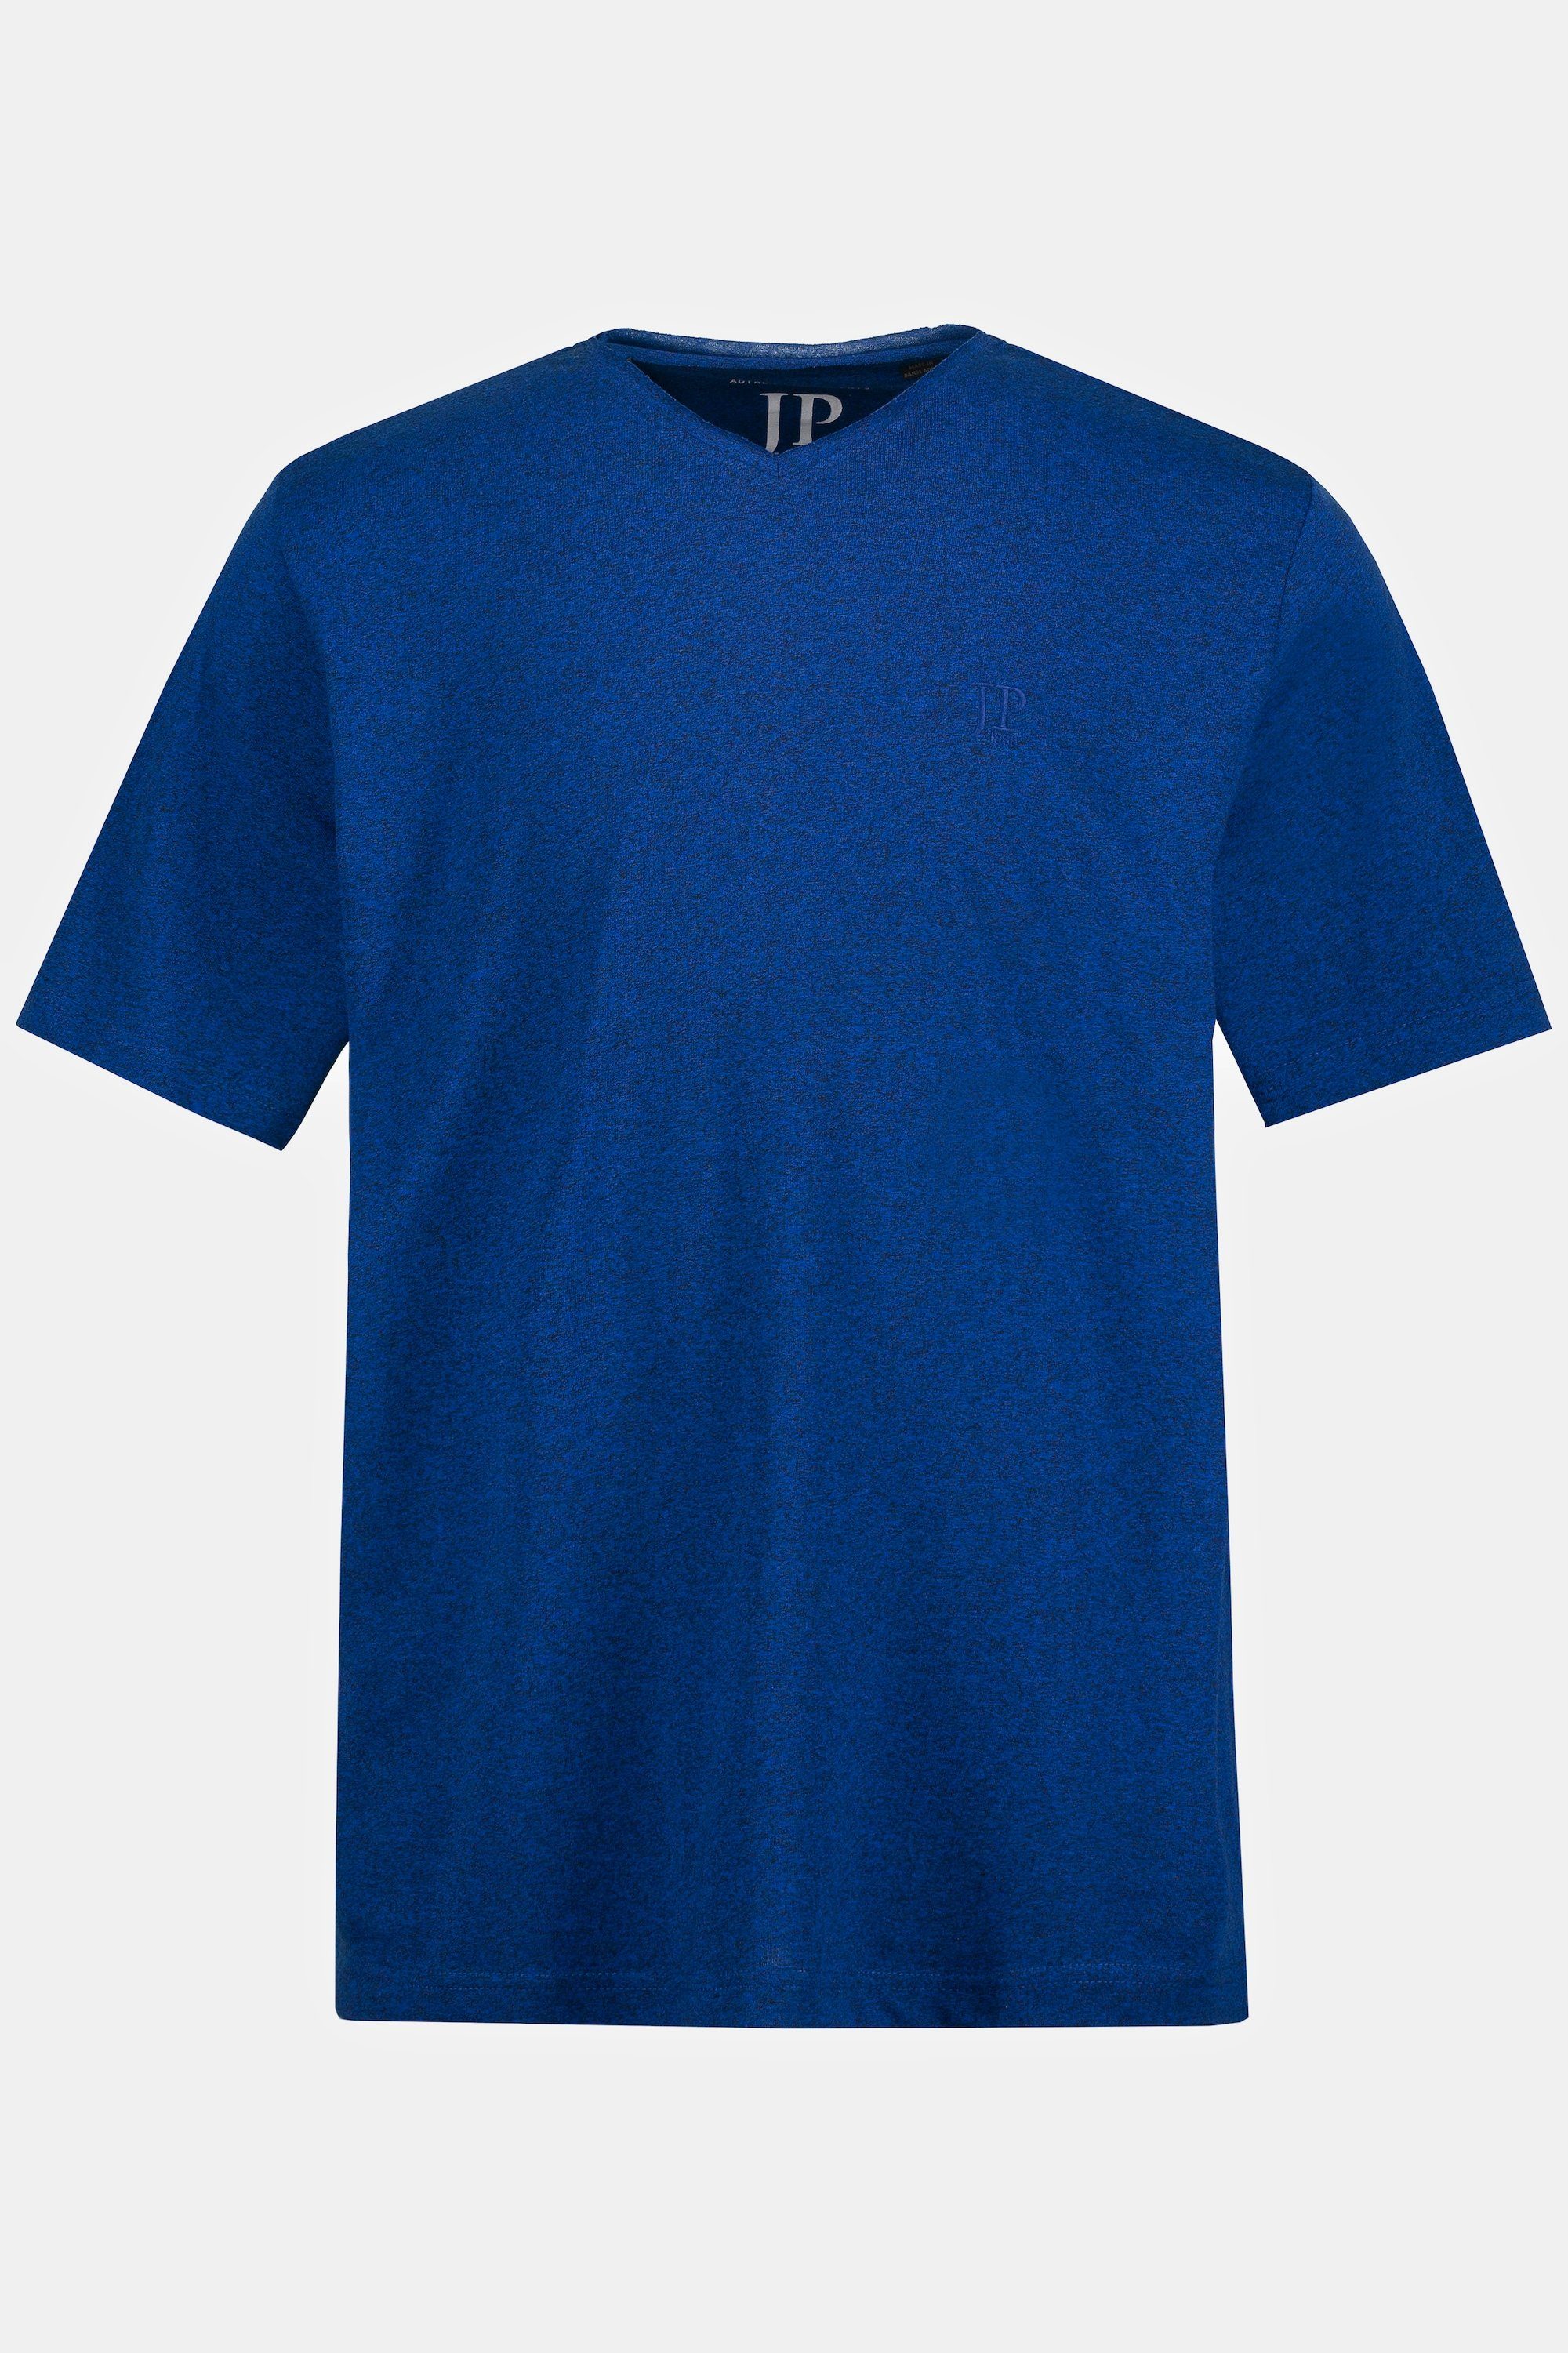 Halbarm clematisblau JP1880 T-Shirt V-Ausschnitt T-Shirt